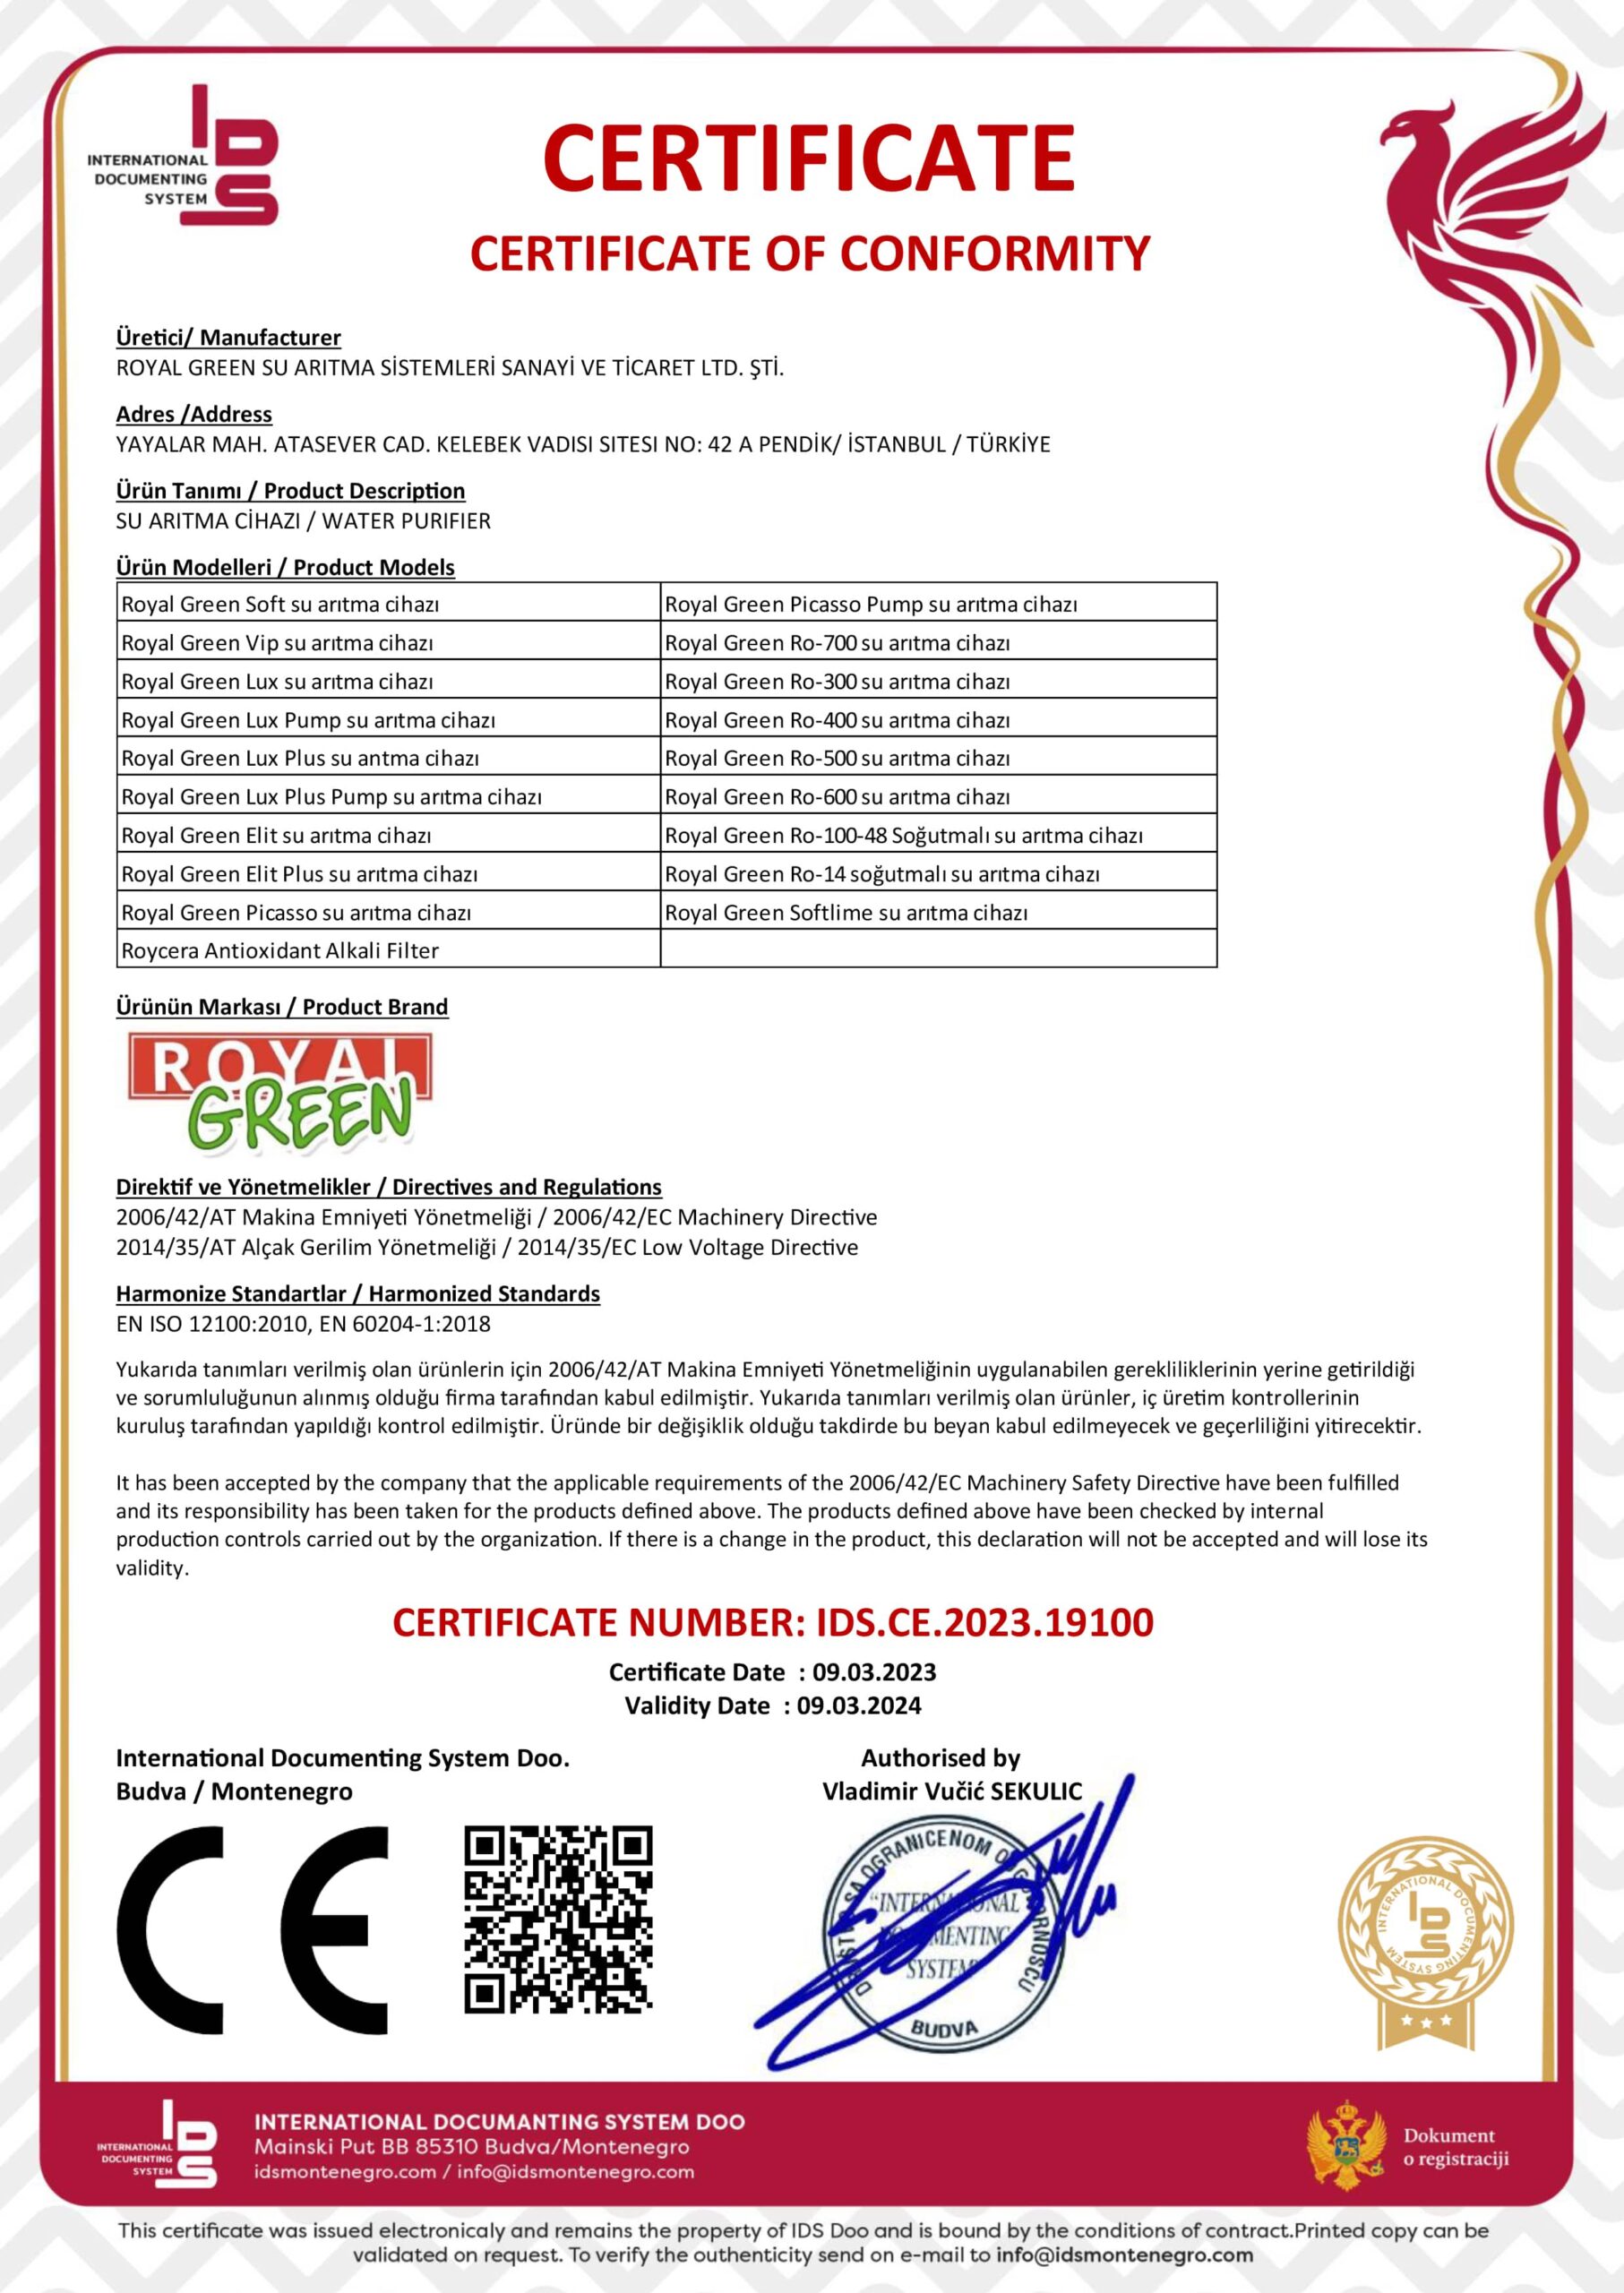 royalgreen ce sertifikasi 2023 min scaled 1